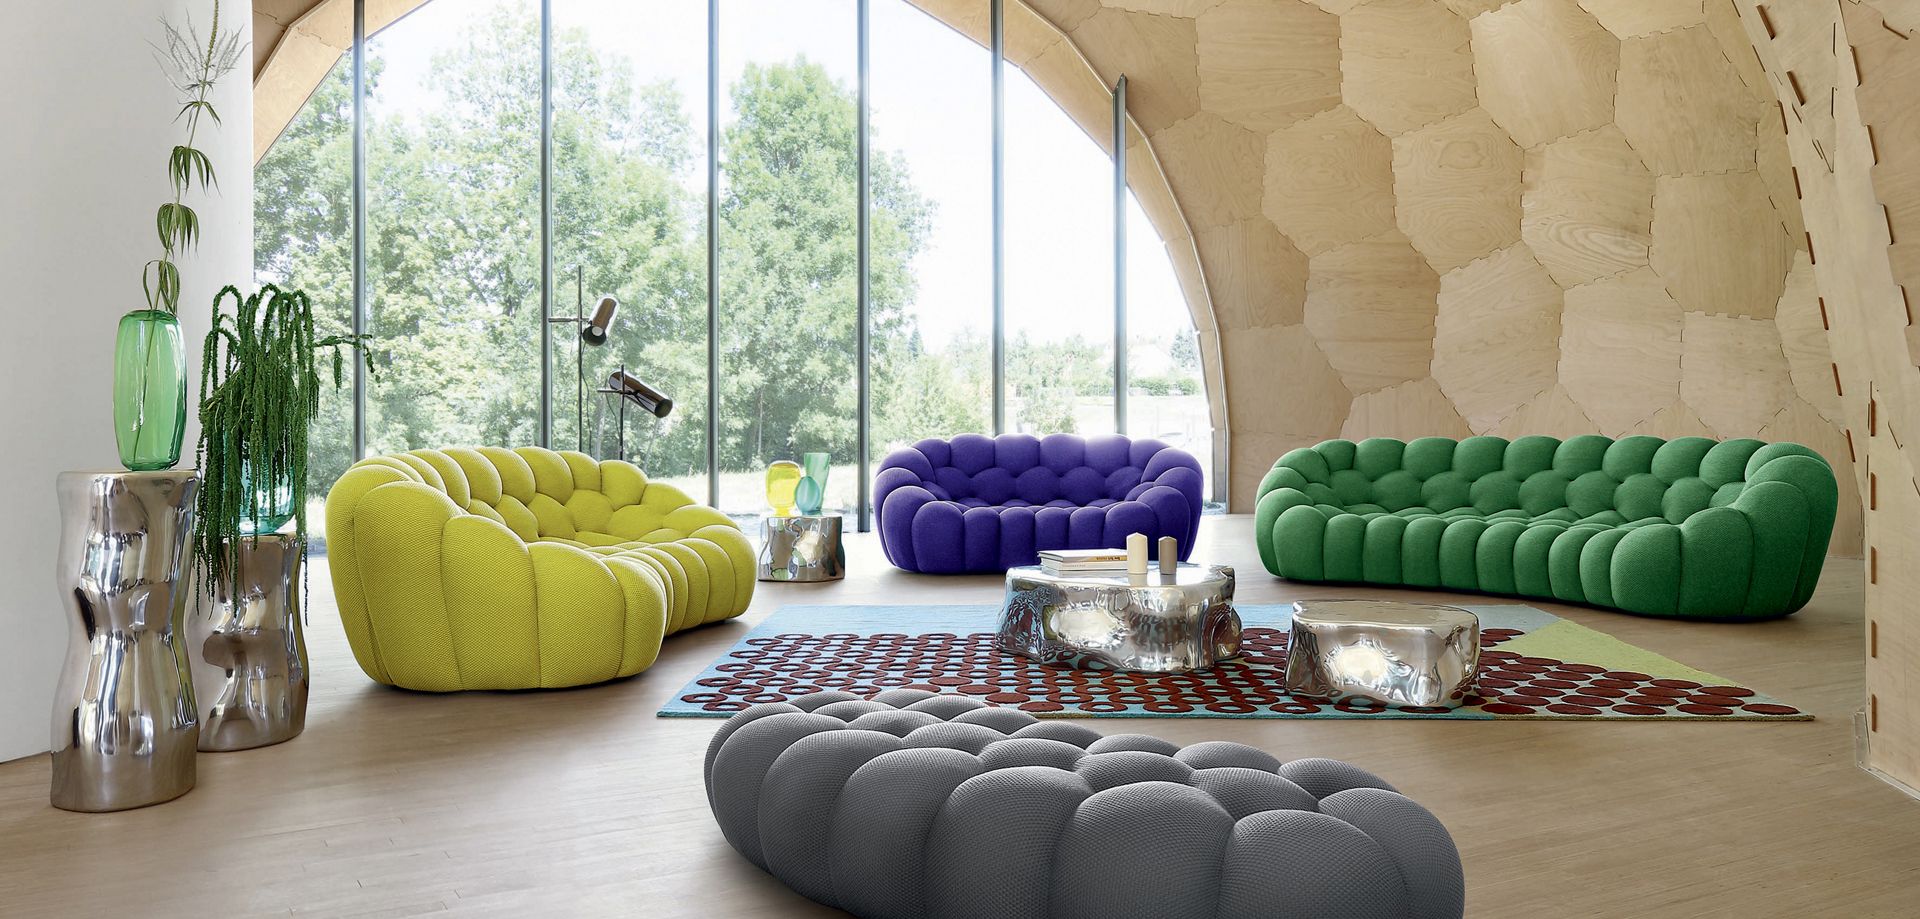 BUBBLE 2 curved 3-4 seat sofa | Roche Bobois